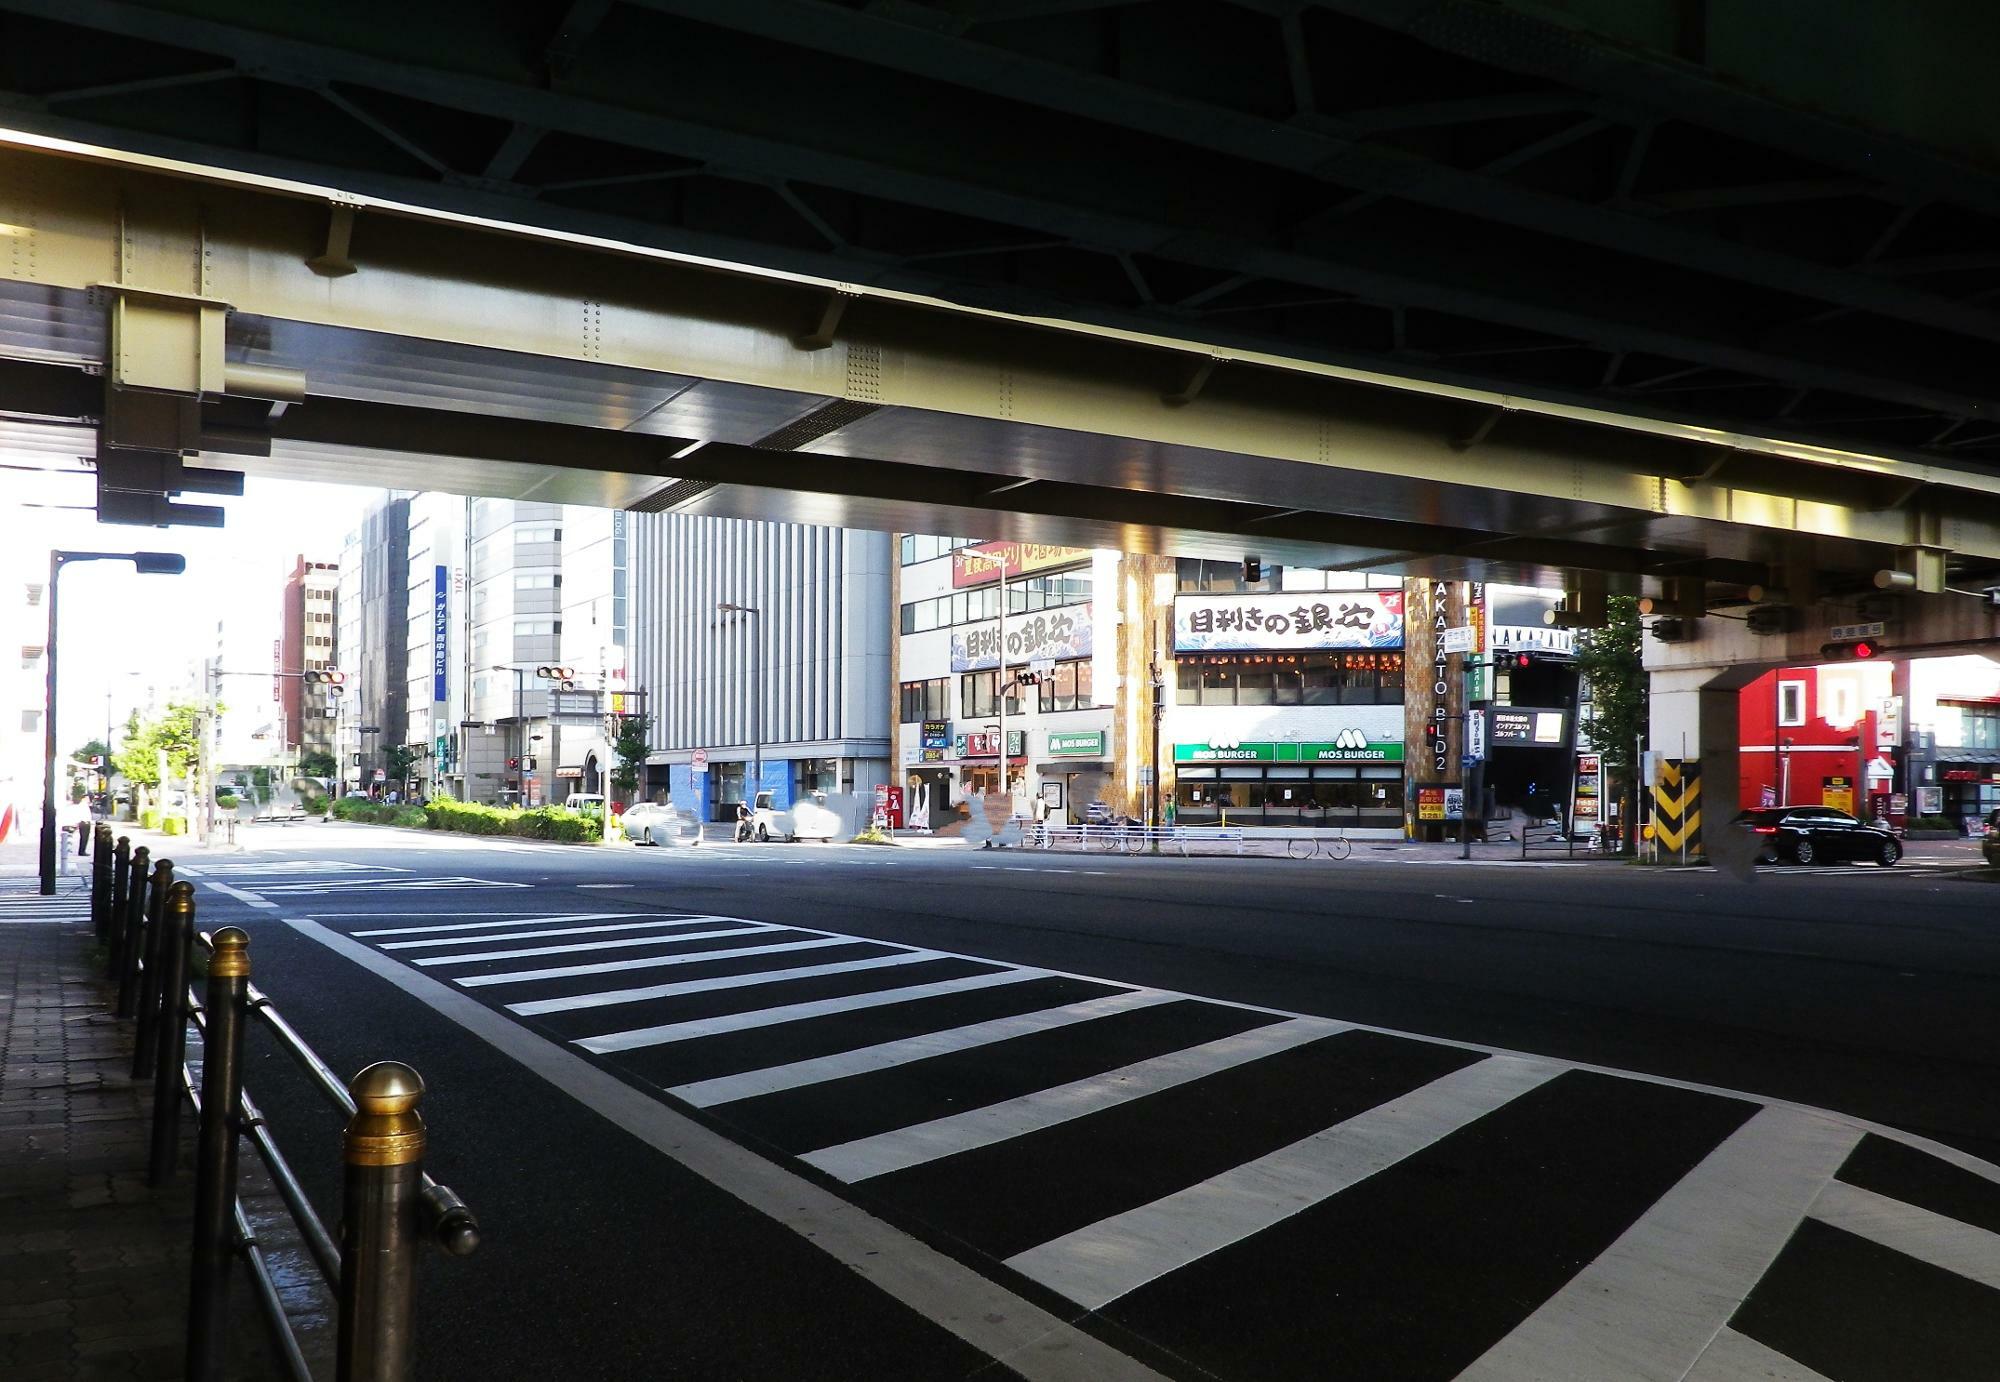 新御堂筋と大阪メトロの下をくぐると見えて来る場所。